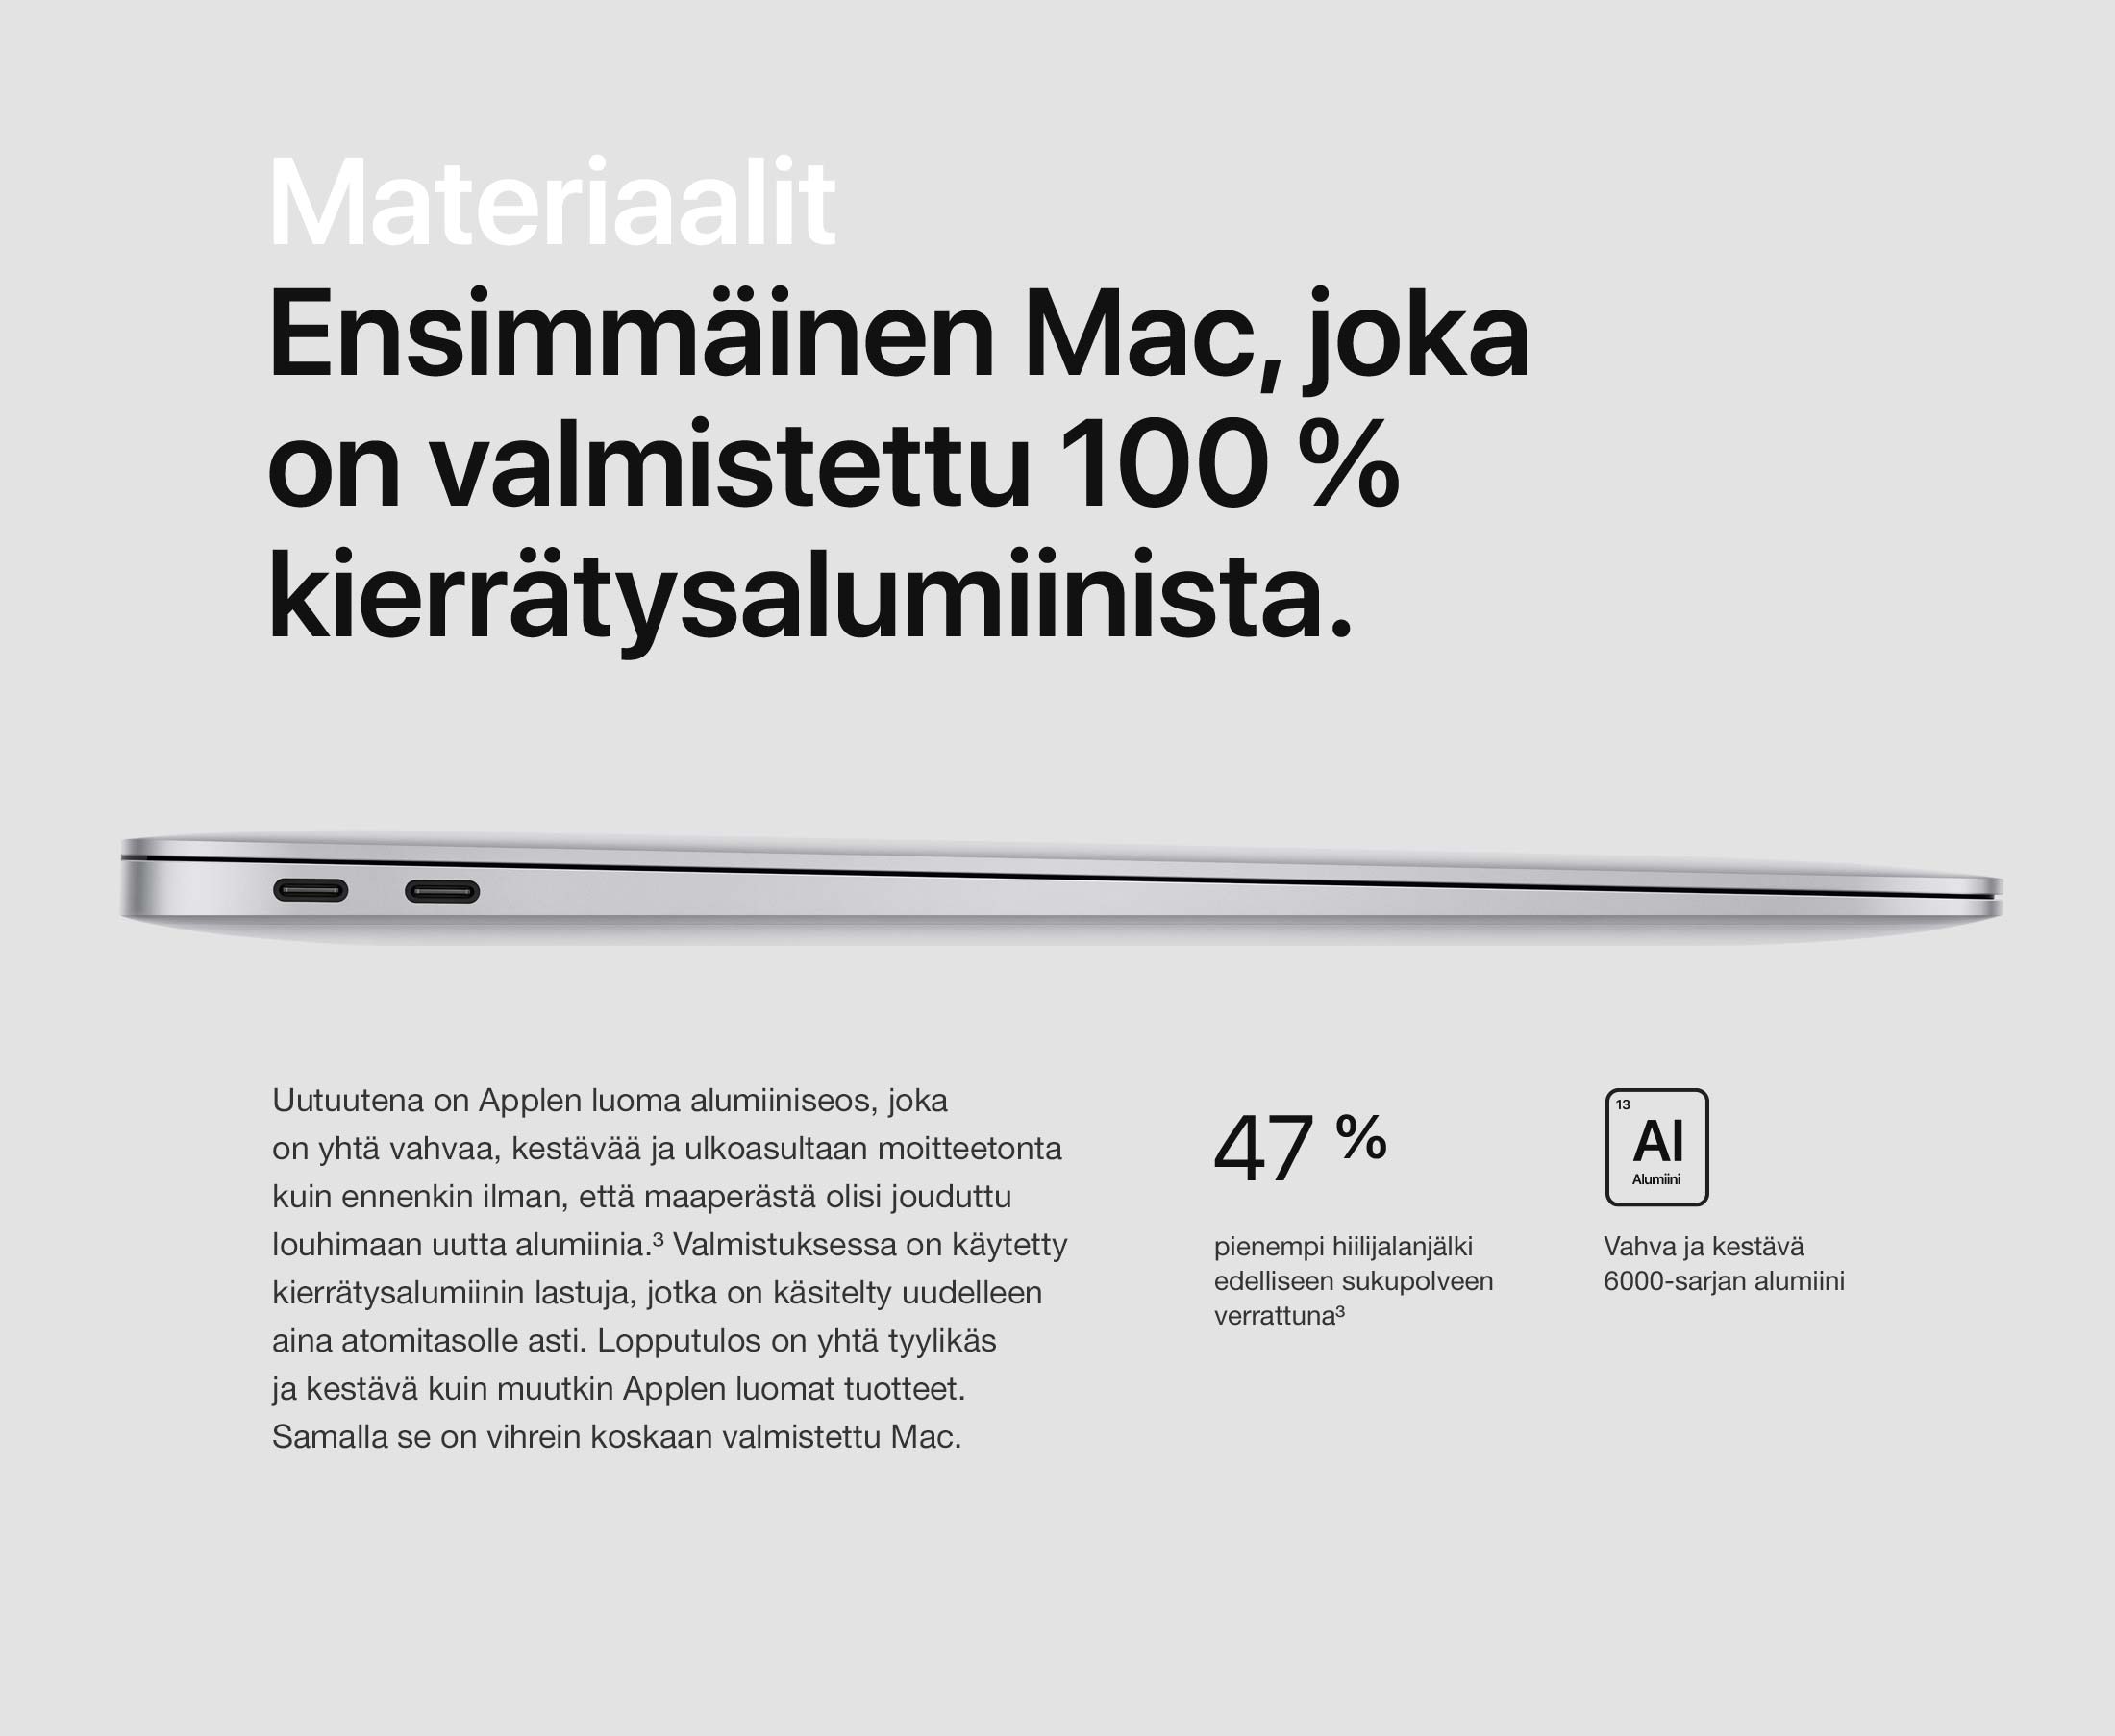 macbook_air_retina_2018